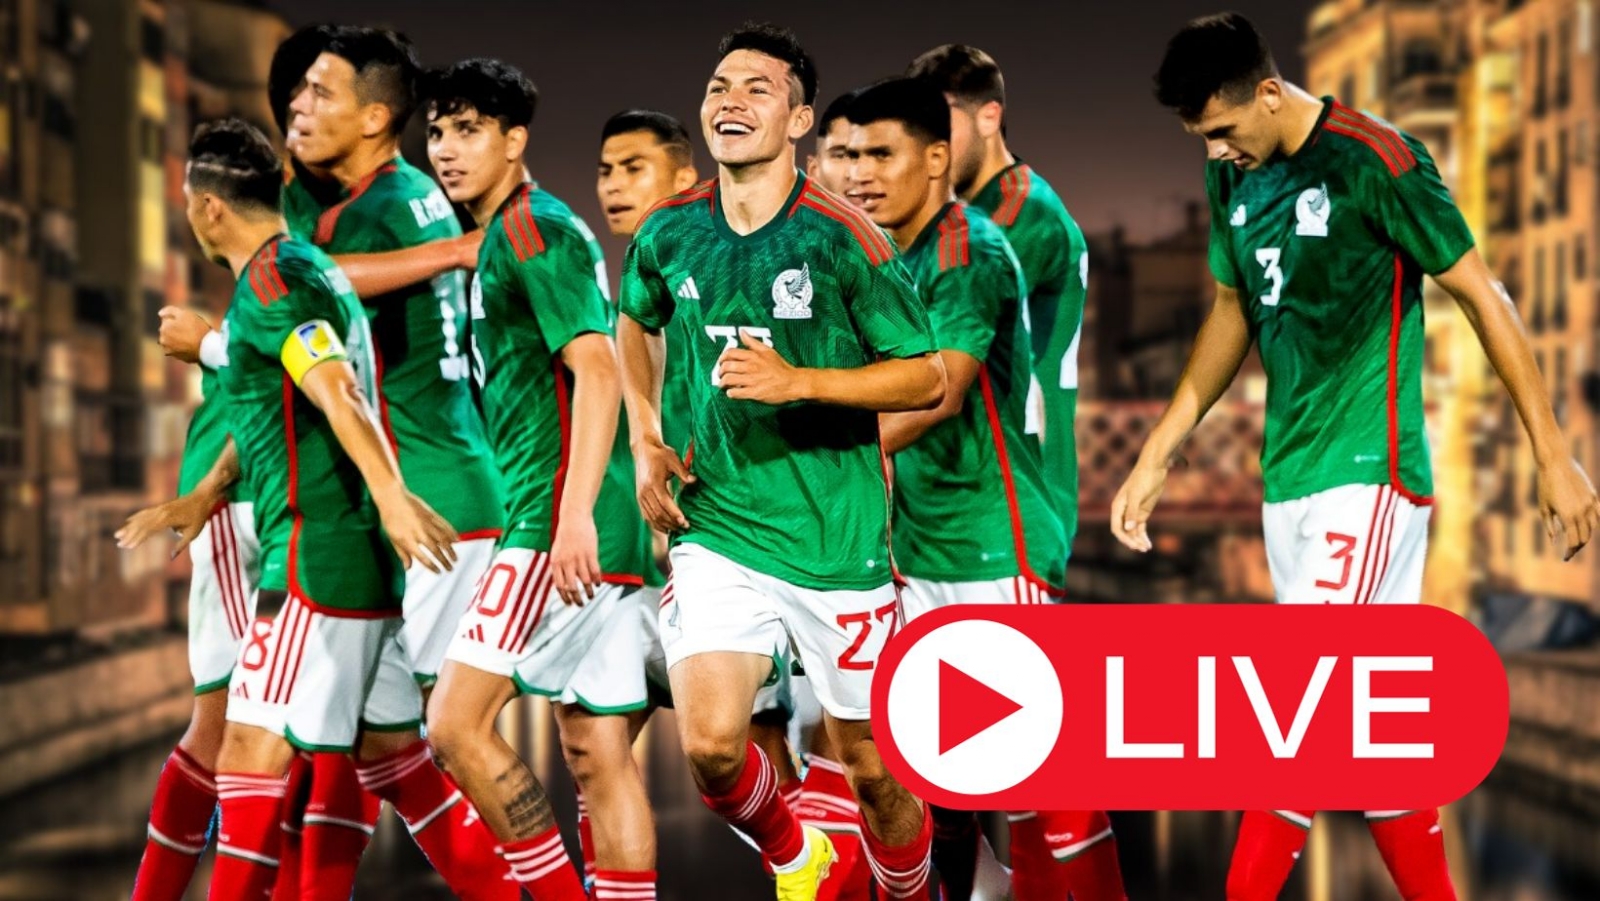 México vs Brasil semifinal Juegos Panamericanos Ver en vivo online y